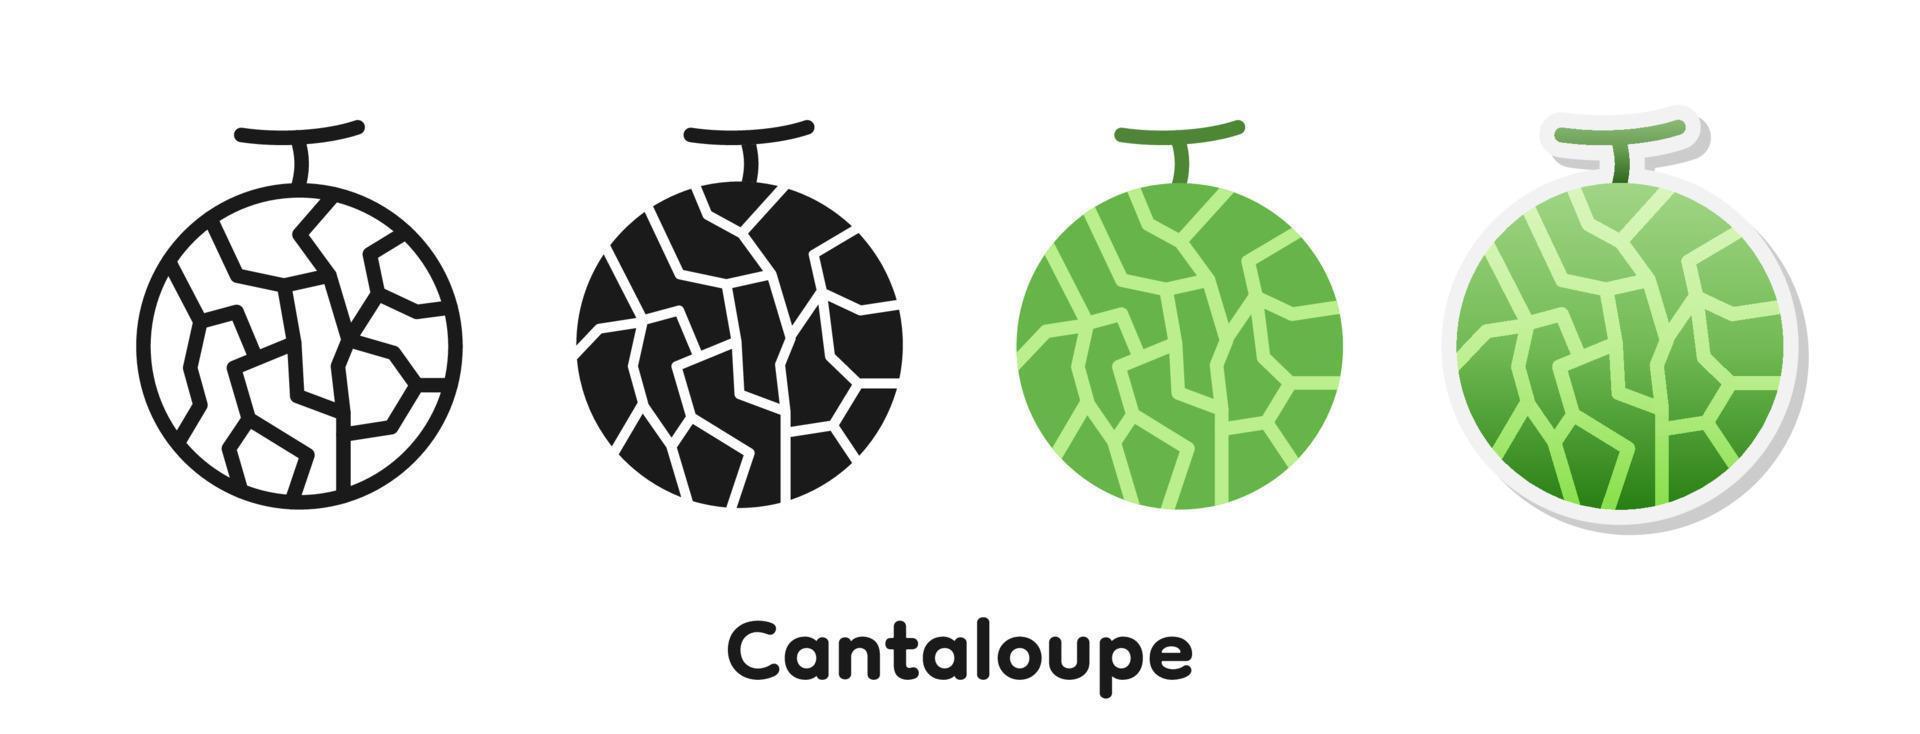 Vector icon set of Cantaloupe.